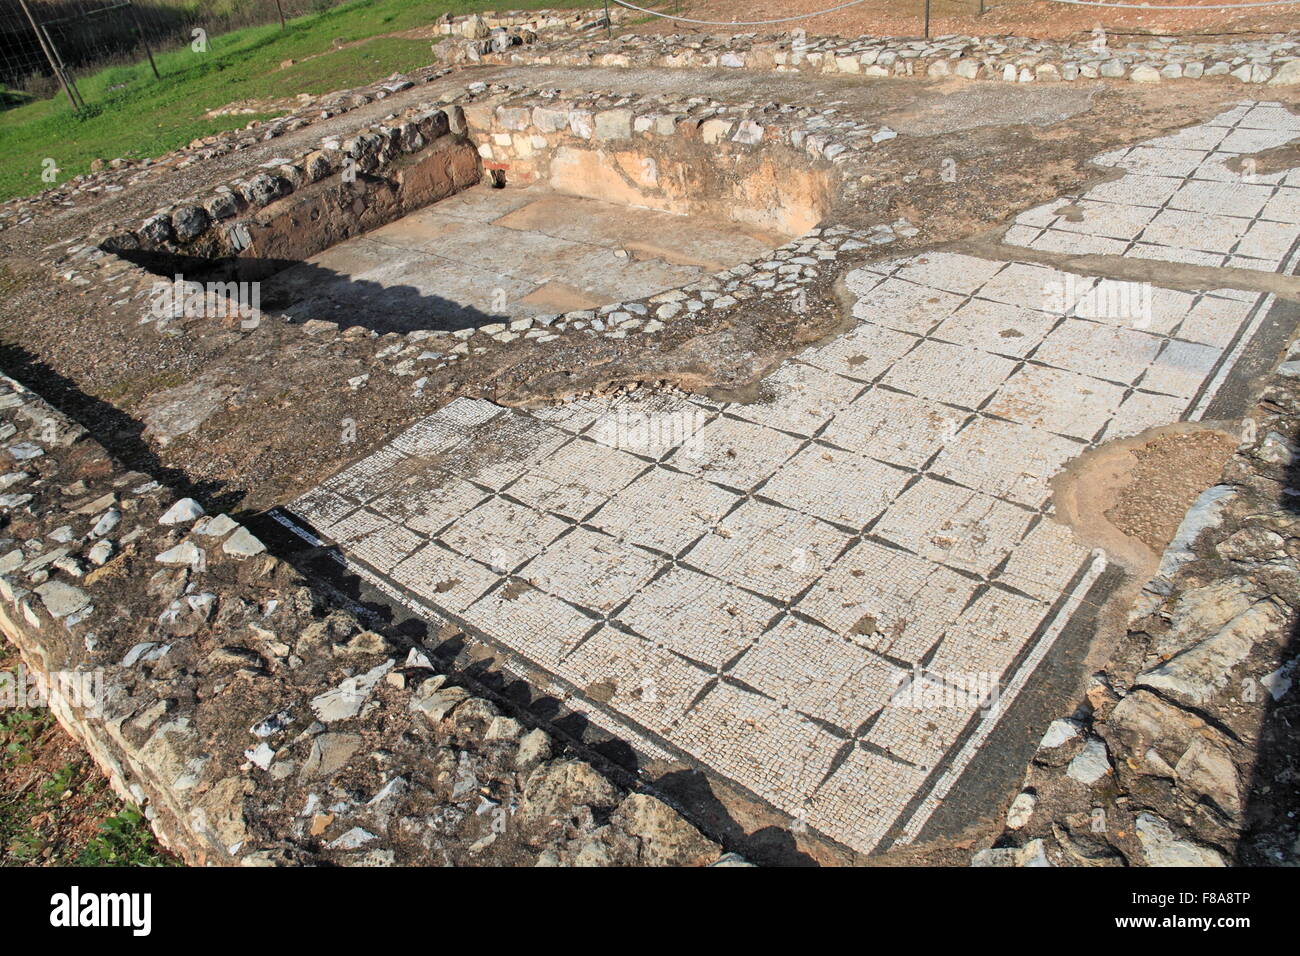 Frigidarium (bagno freddo), Cerro da Vila sito archeologico romano e museo, Vilamoura, Quarteira, Algarve, Portogallo, Europa Foto Stock